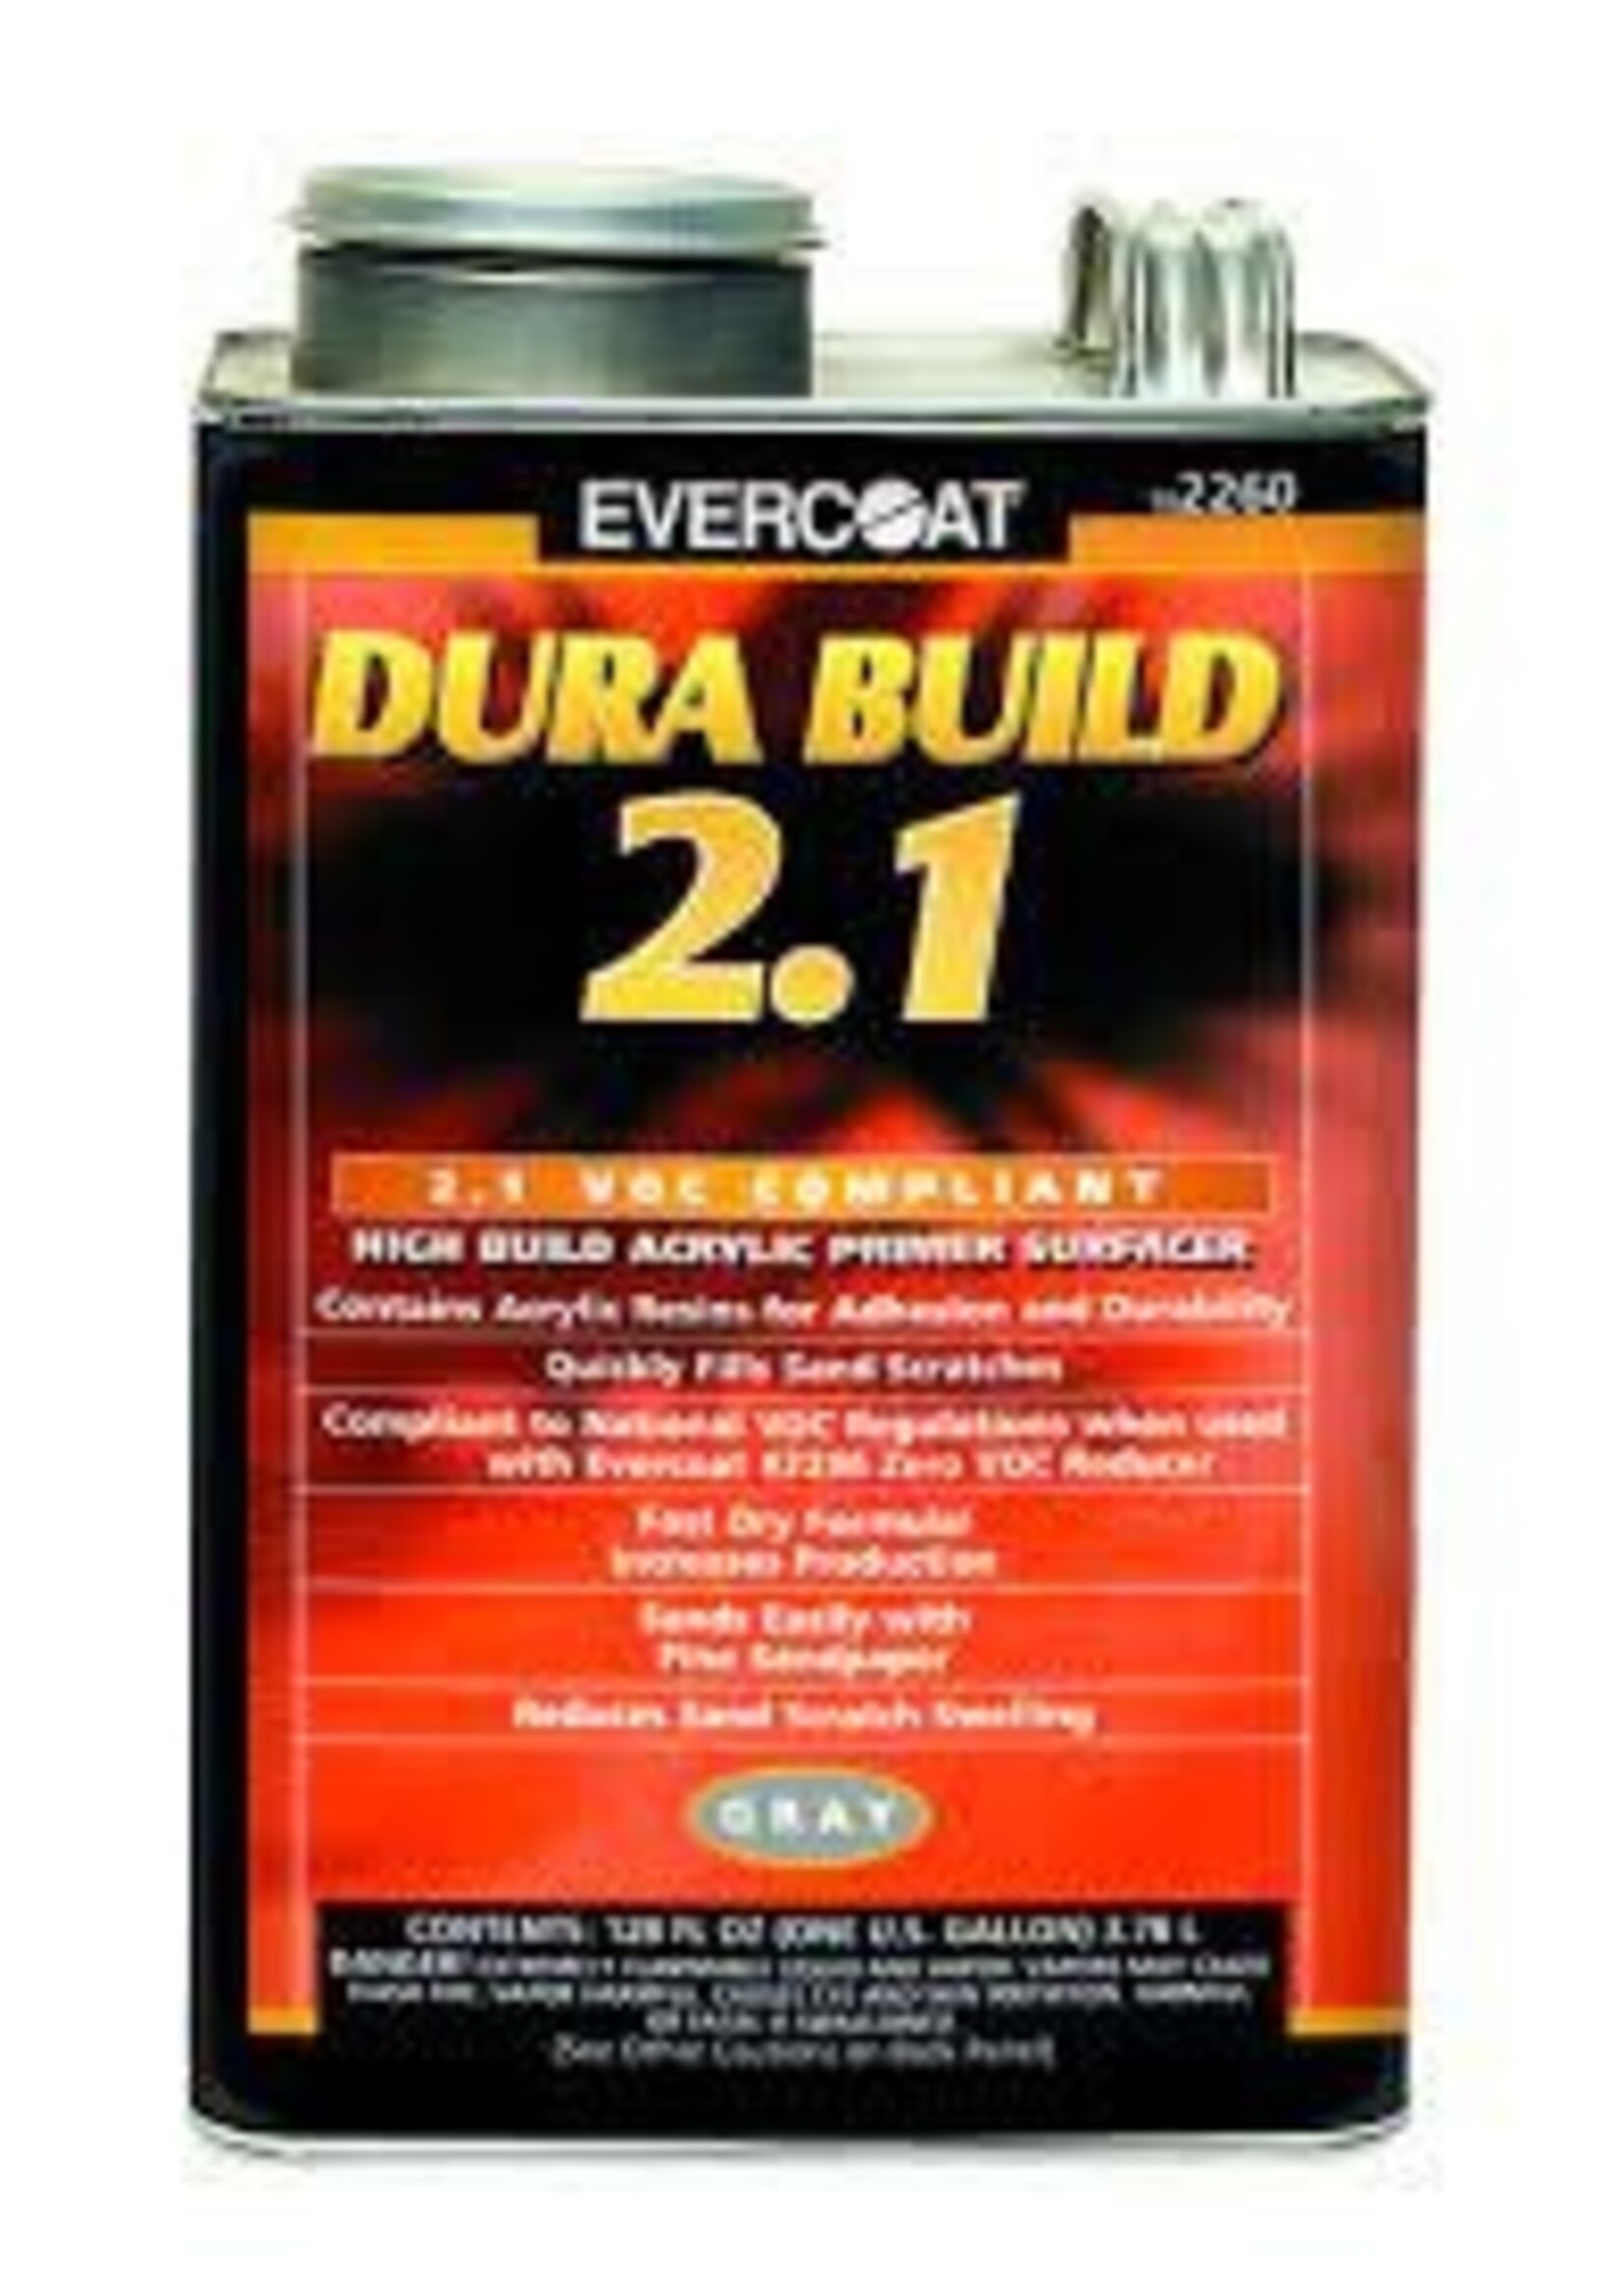 Evercoat FIB-2260 DuraBuild Primer